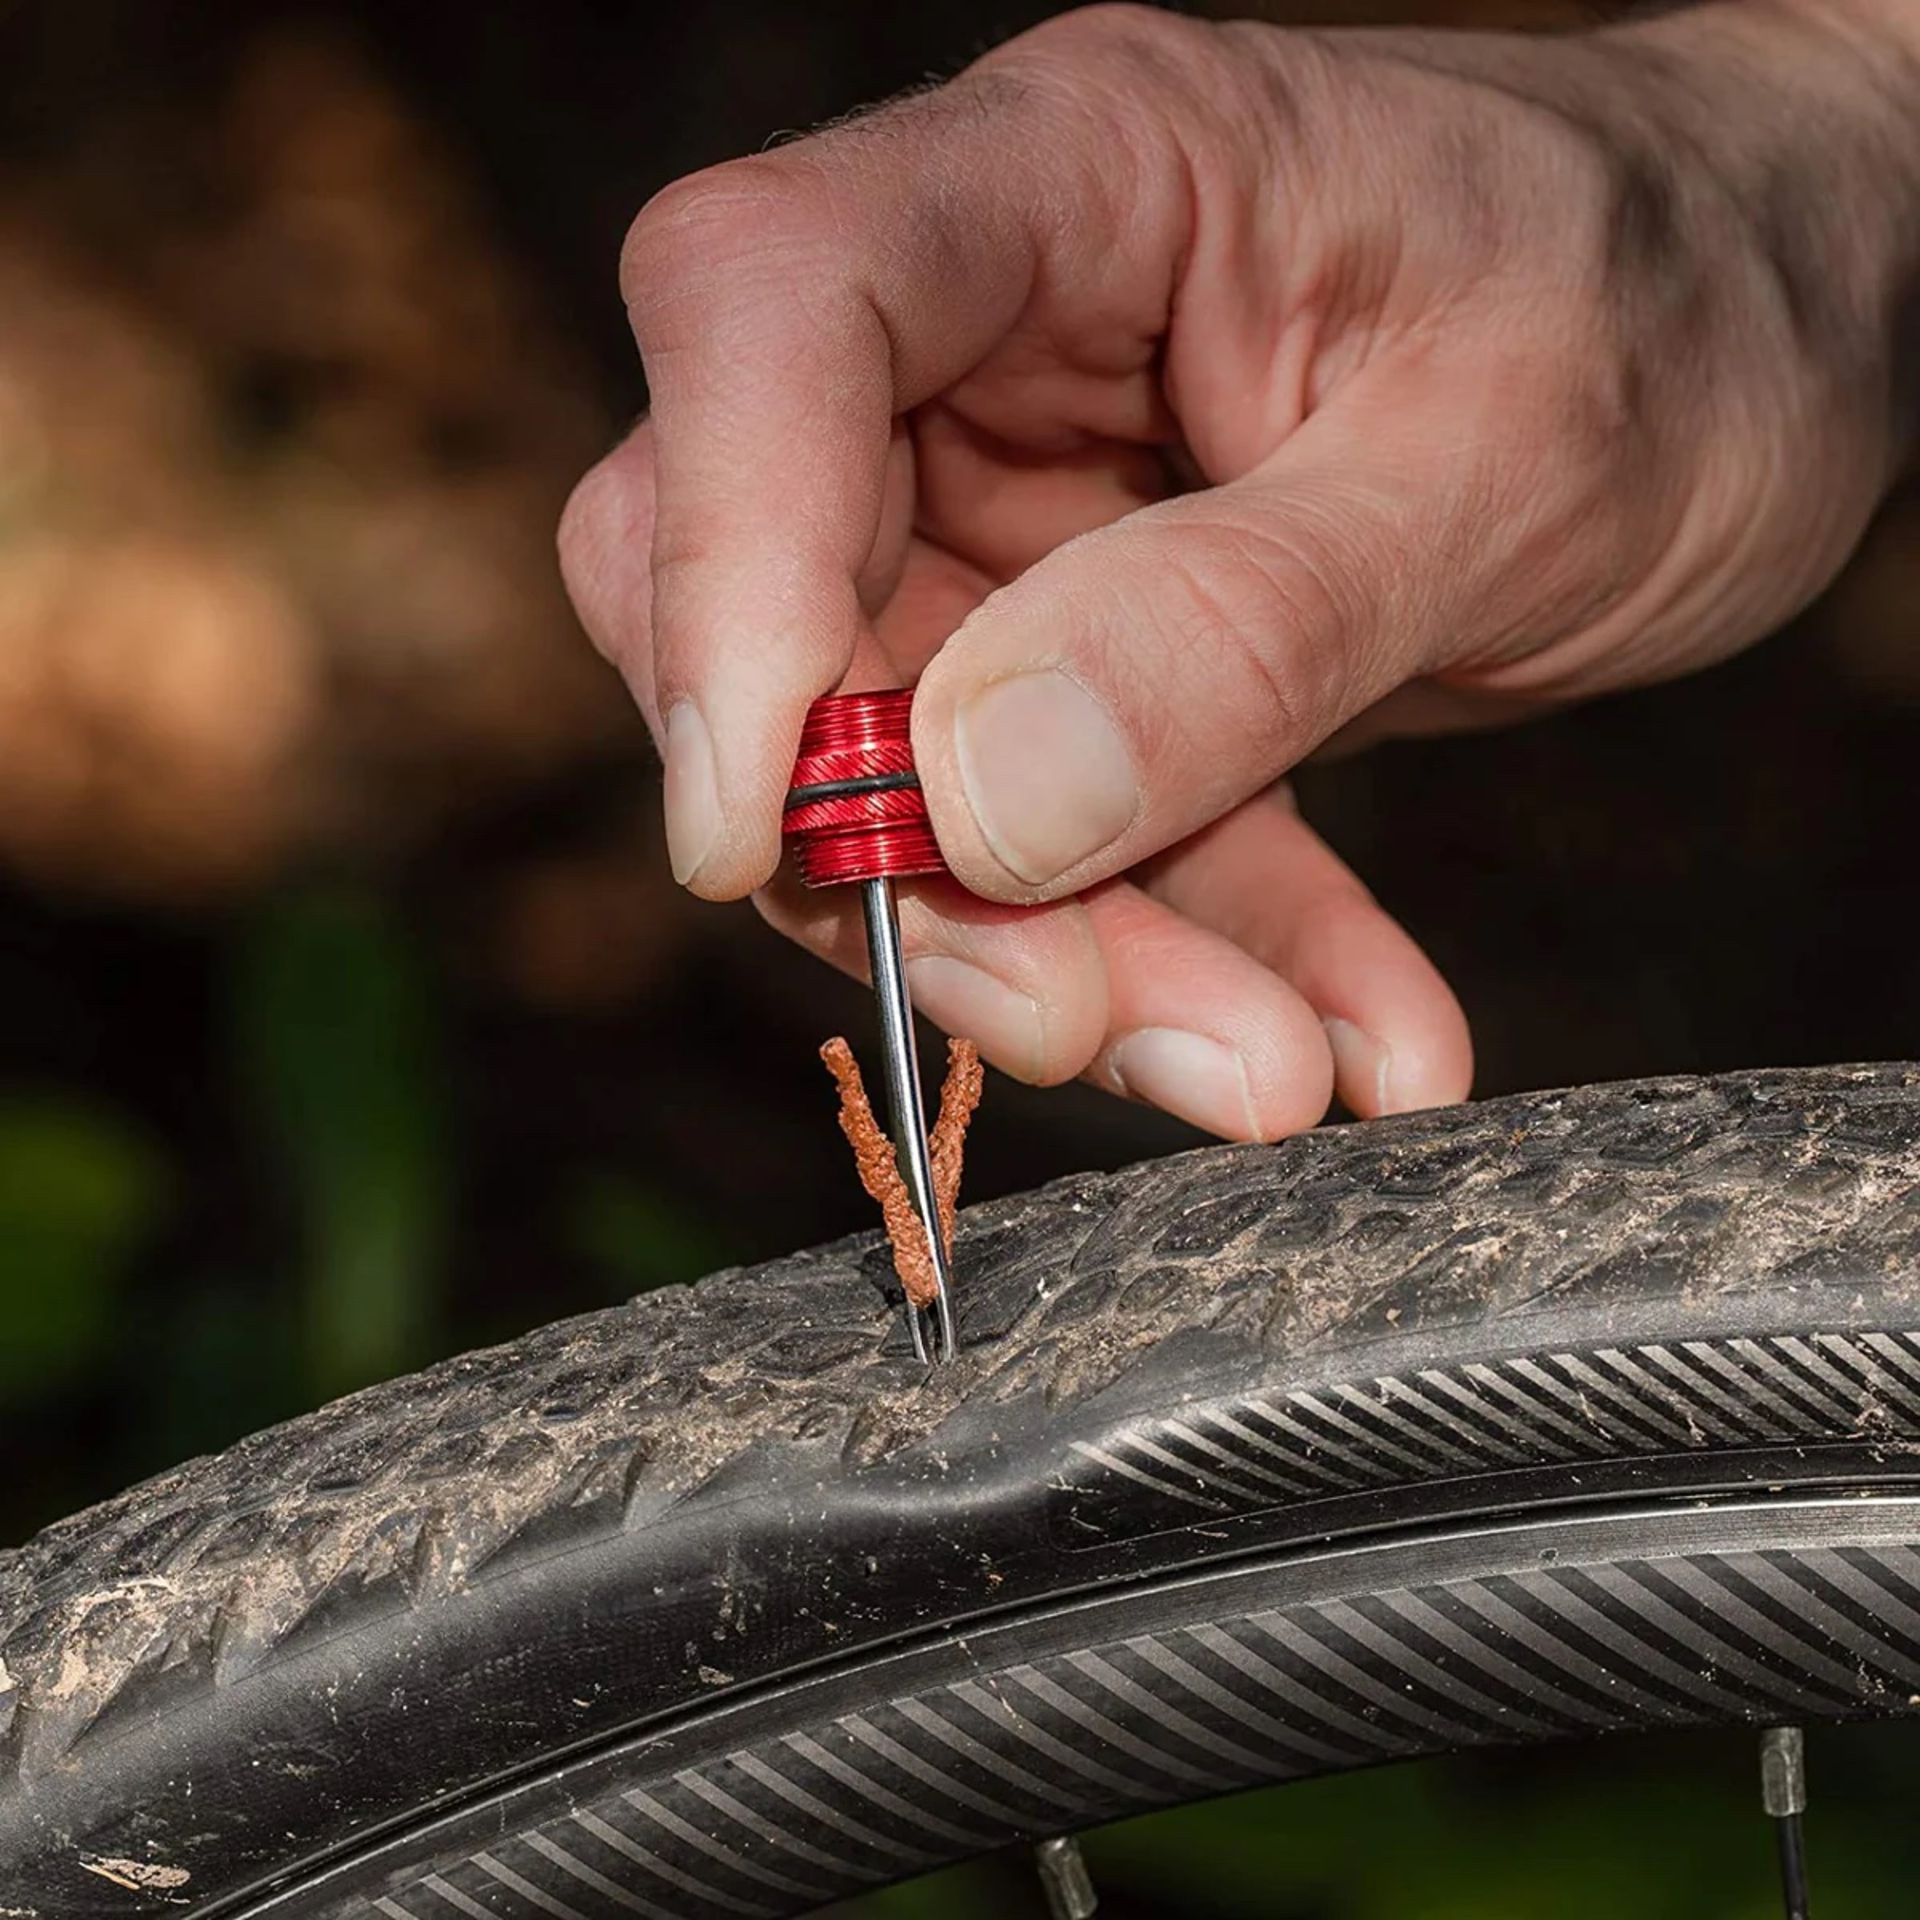 20 x Pro Bike Tool Tubeless Bike Tyre Handlebar Repair Kit - (NEW) - RRP Â£239.40+ ! - Image 7 of 9